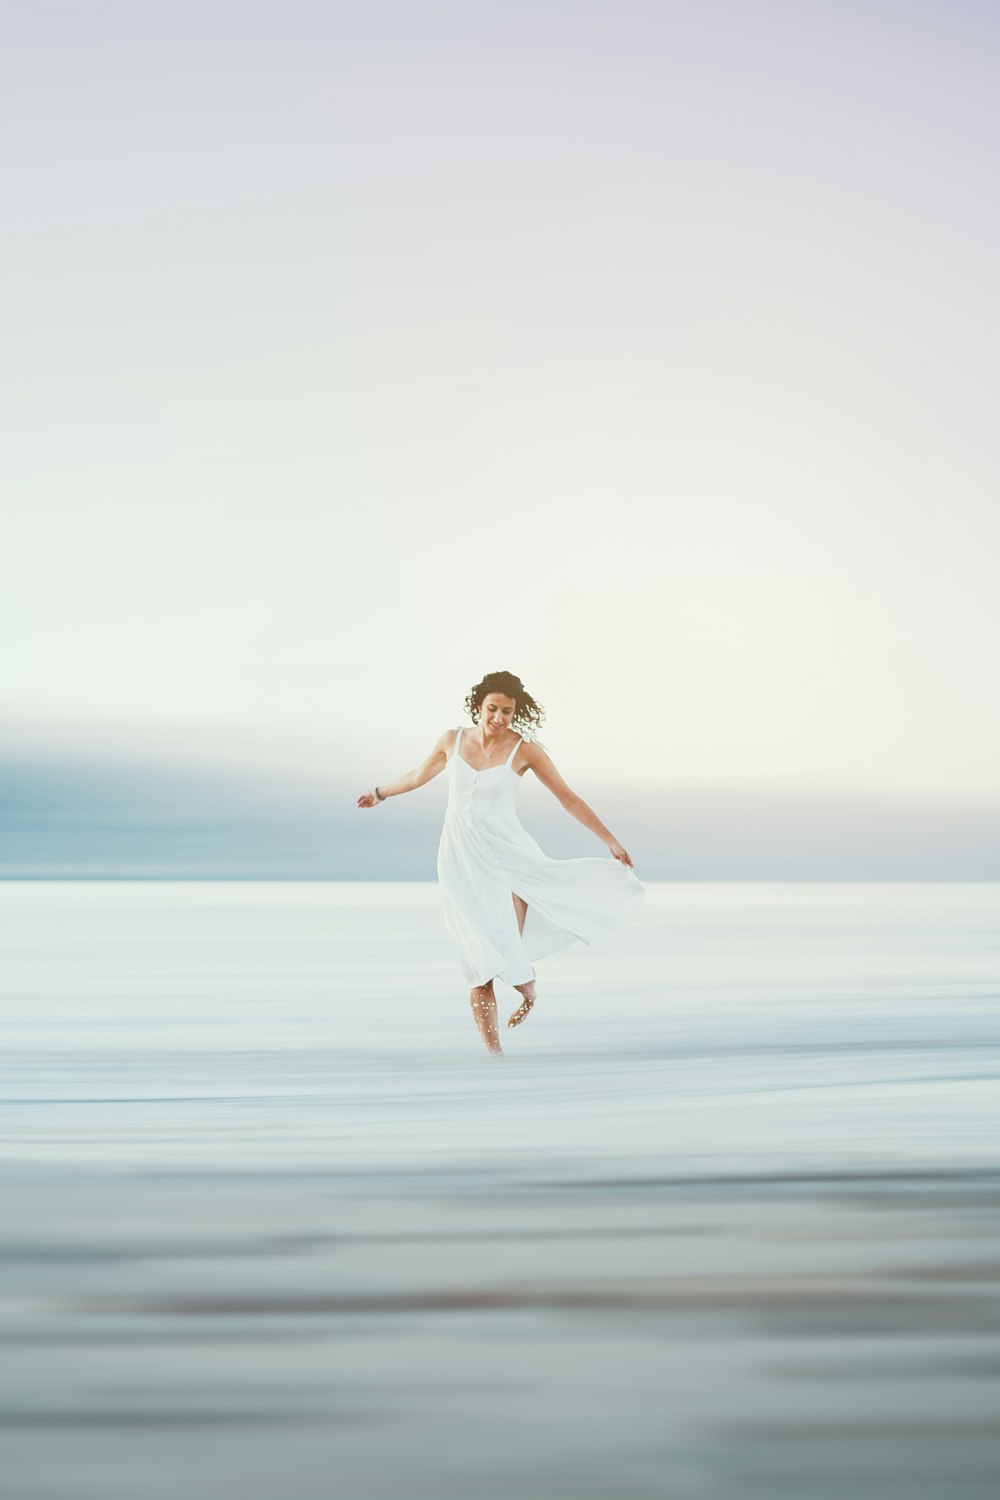 白いドレスを着た女性が空中に飛び跳ねる